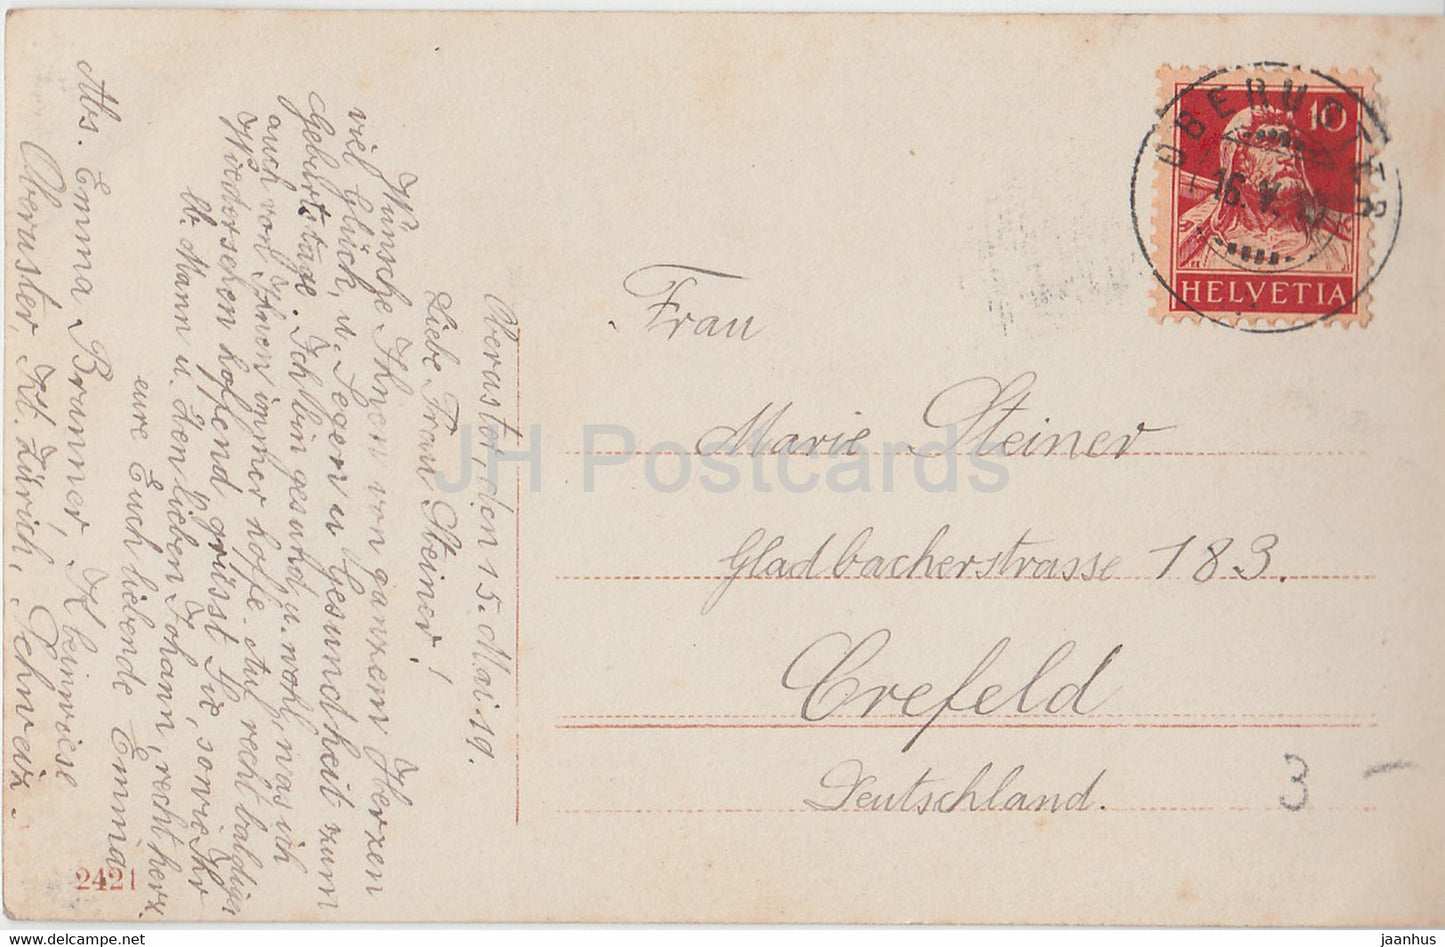 Birthday Greeting Card - Herzlichen Gluckwunsch zum Geburtstage - sailor boy - EAS - old postcard - Germany - used